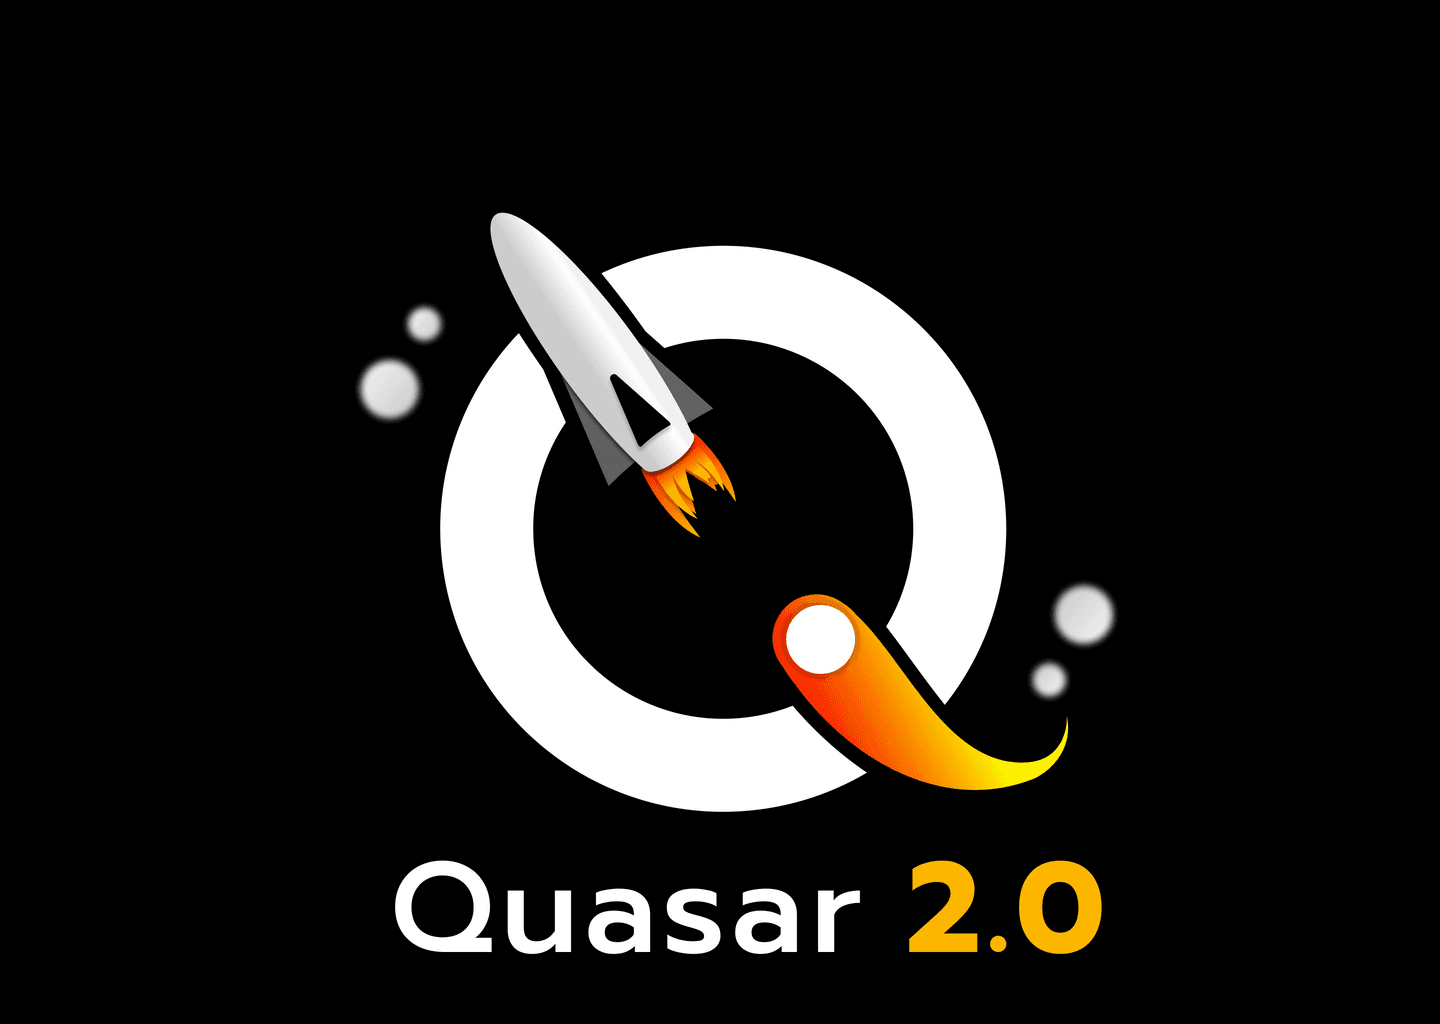 Quasar 2.0